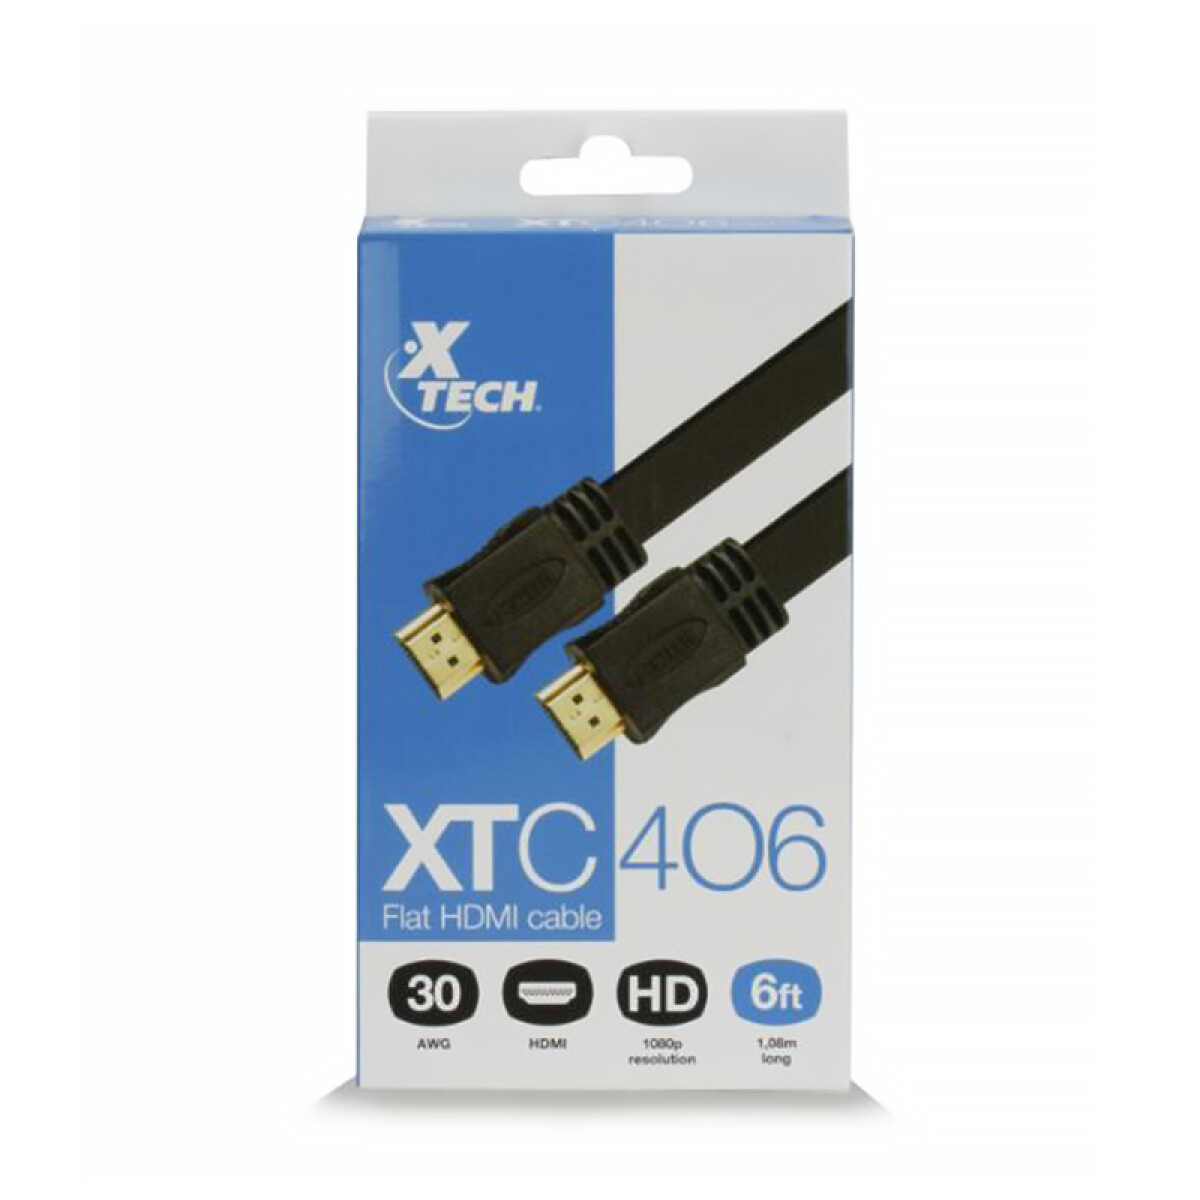 CABLE PLANO HDMI A HDMI 1.8 METROS XTECH XTC-406 Negro